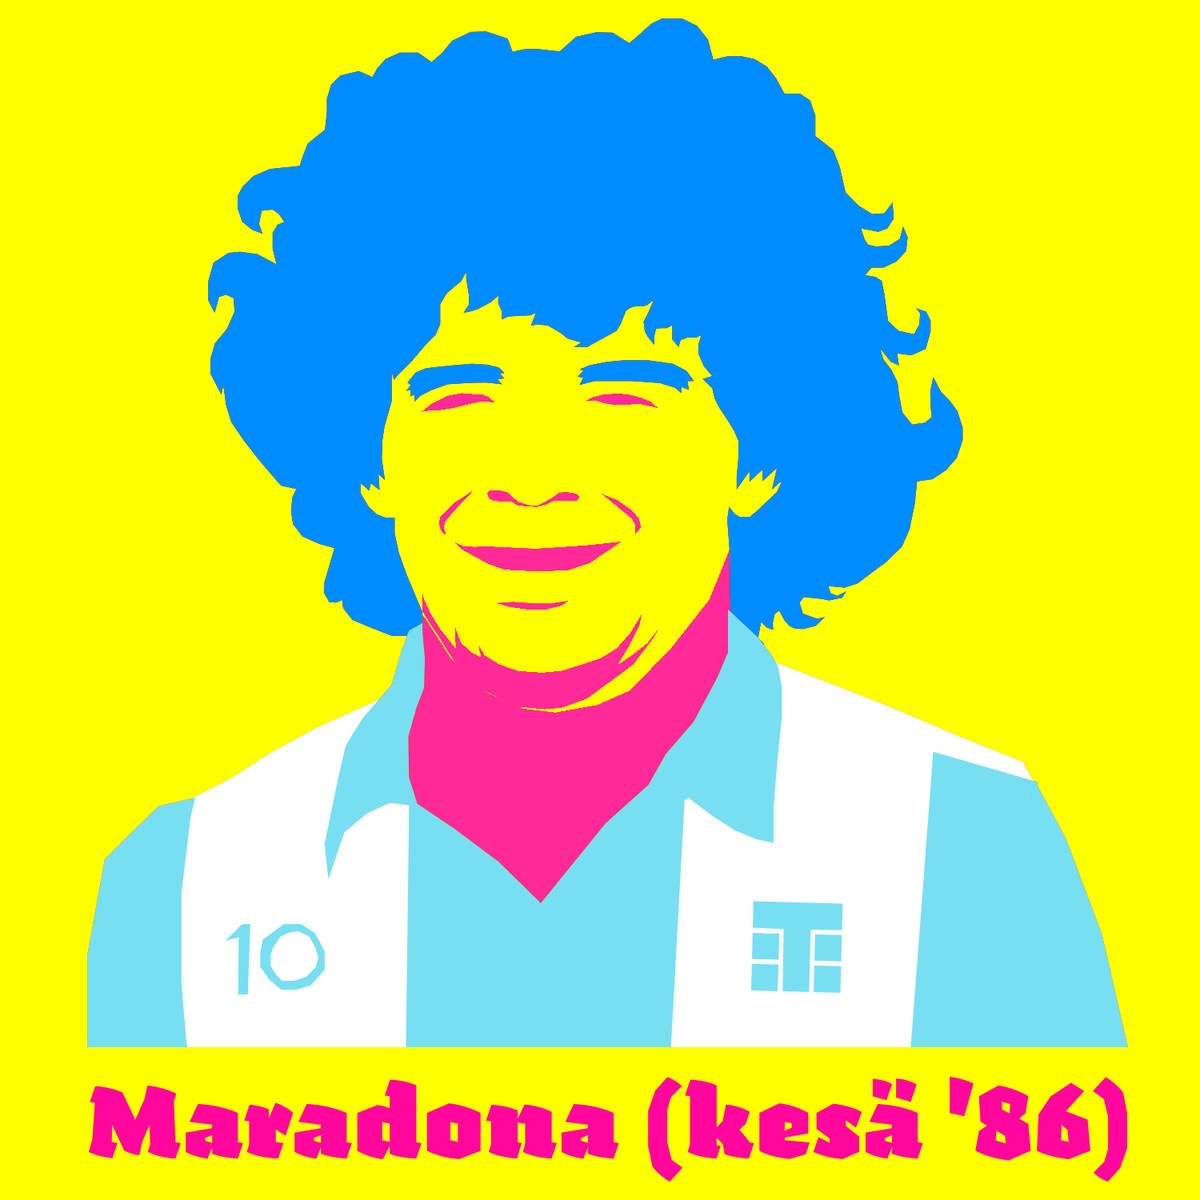 Maradona kes 86